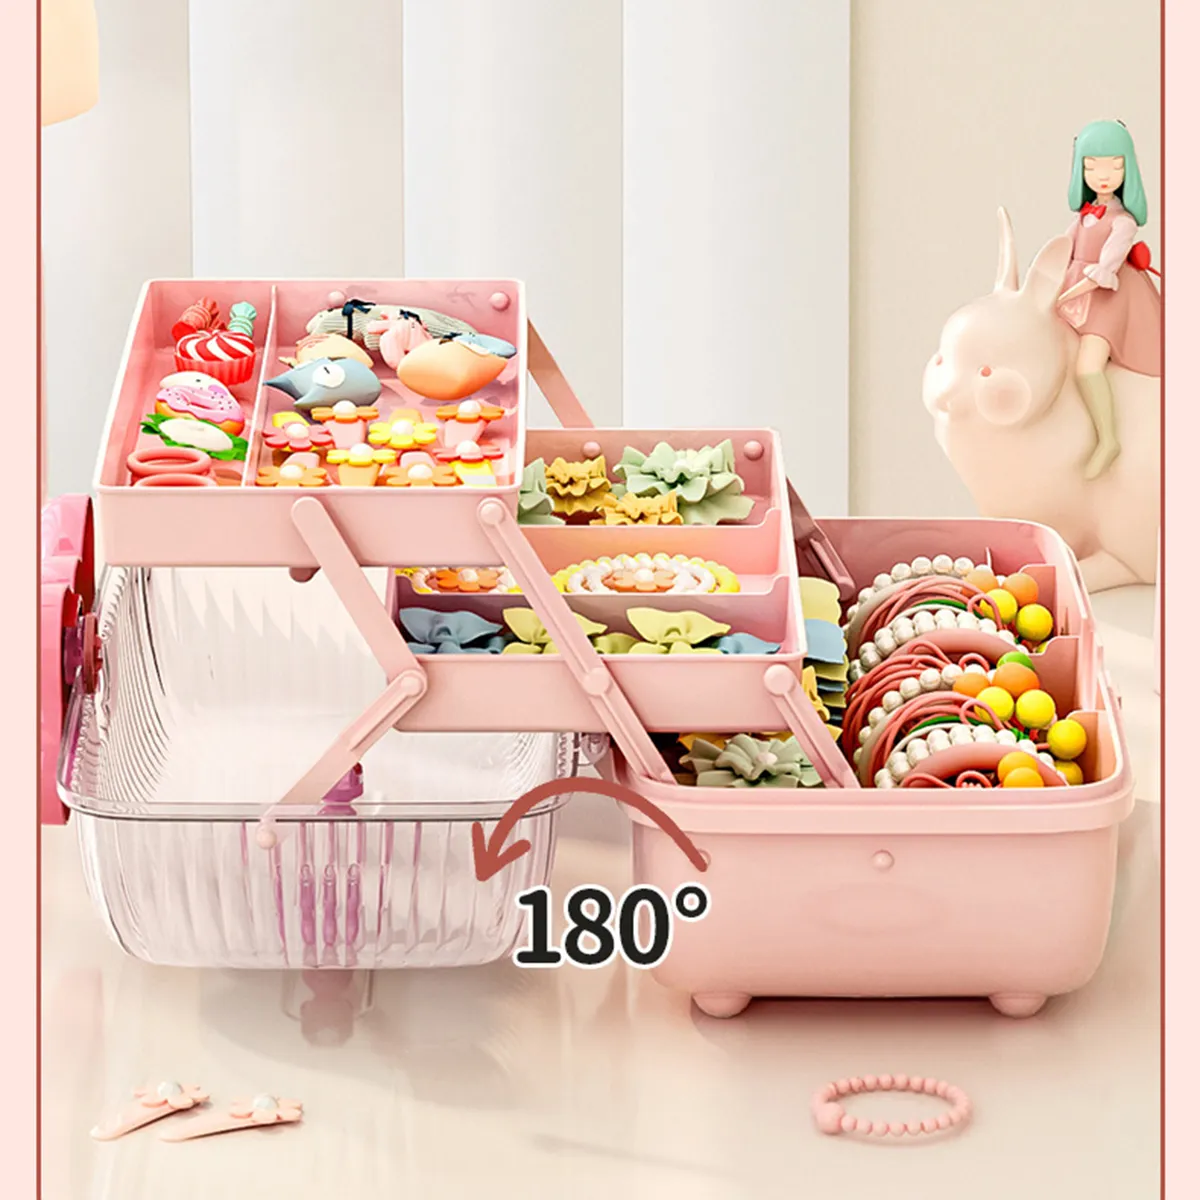 Criança transparente e bonito joias e caixa de armazenamento de acessórios Rosa big image 1